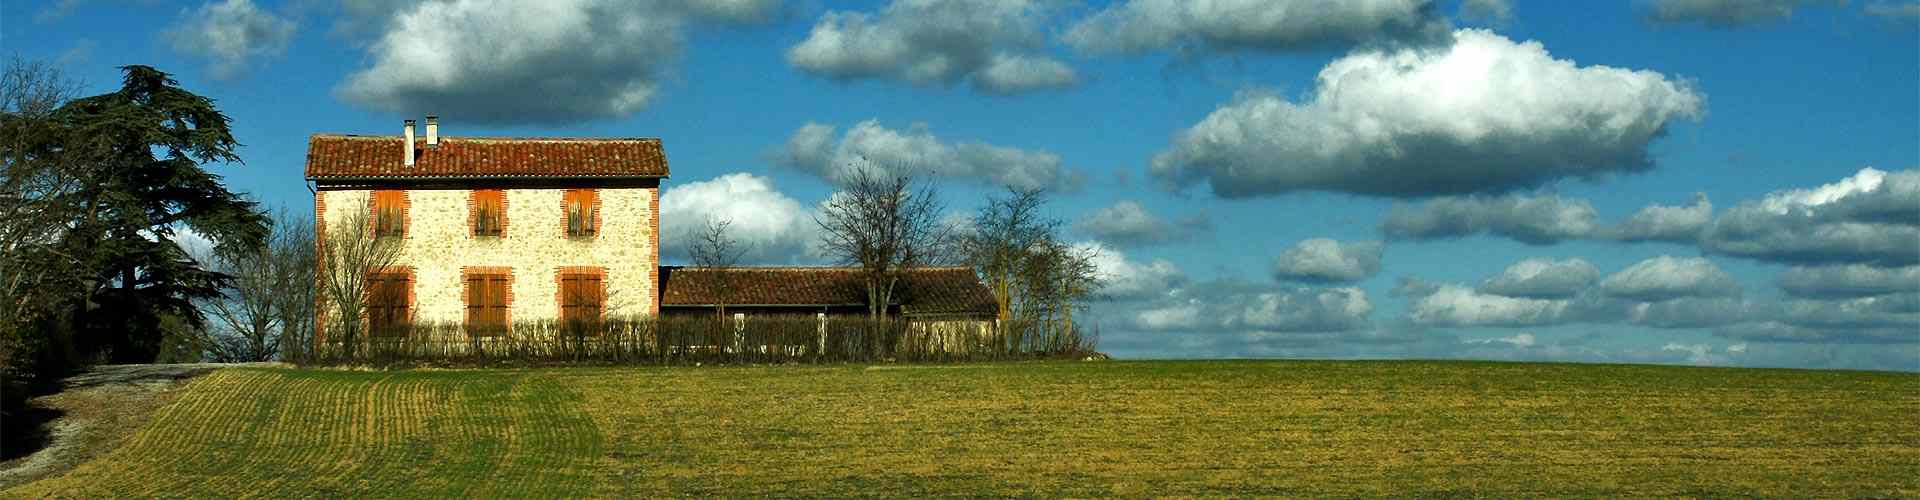 Casas rurales en Viver i Serrateix